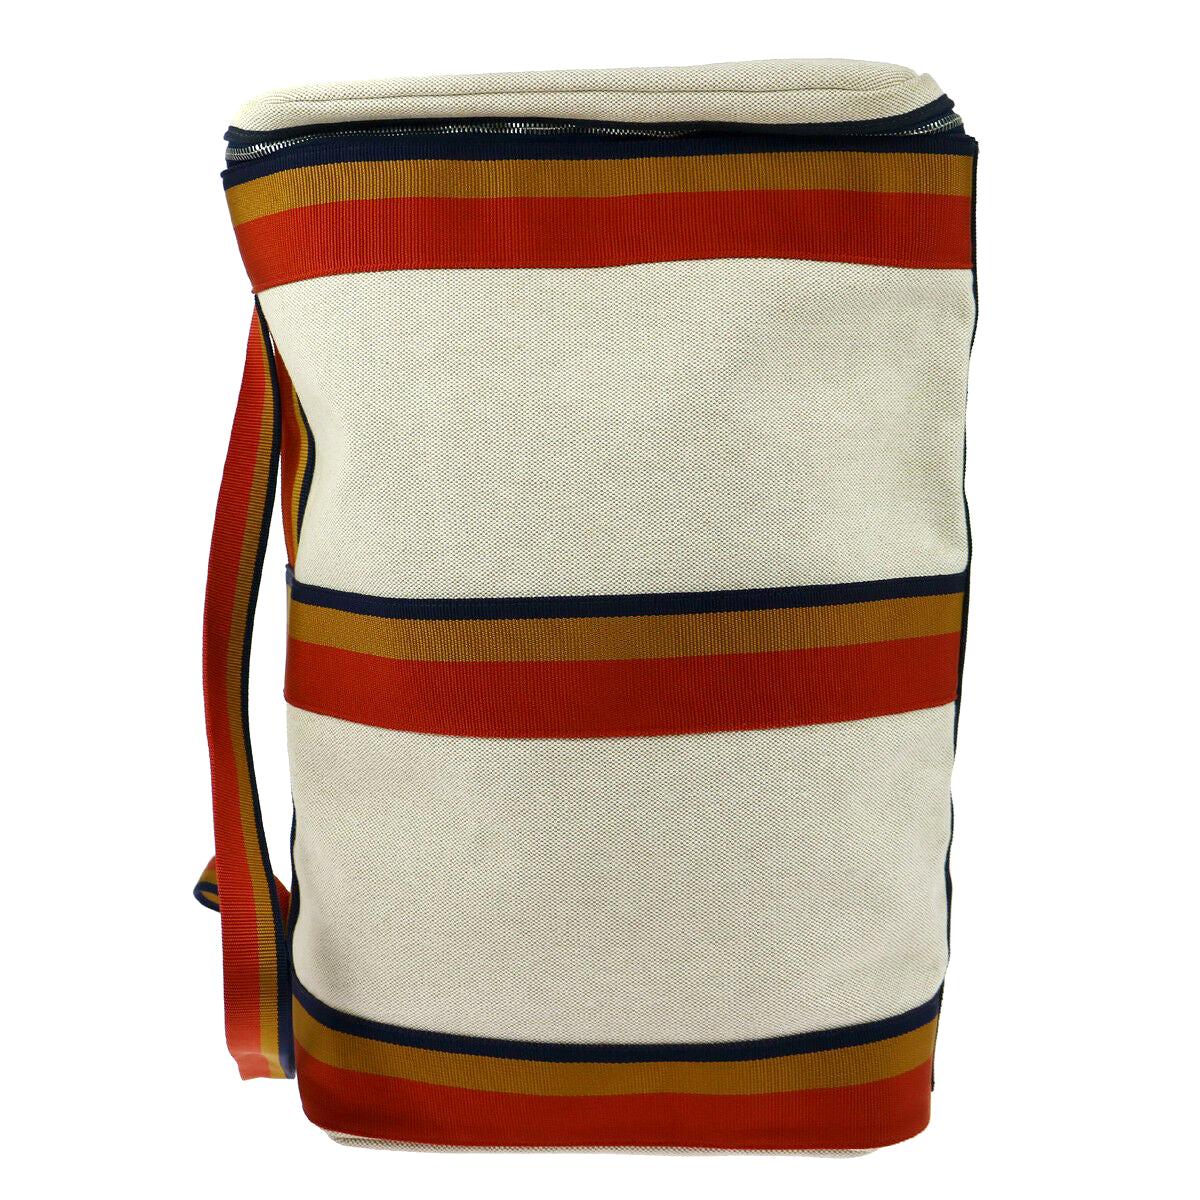 Hermes Canvas Tan Red Blue Orange Stripe Men's Knapsack Shoulder Travel Bag